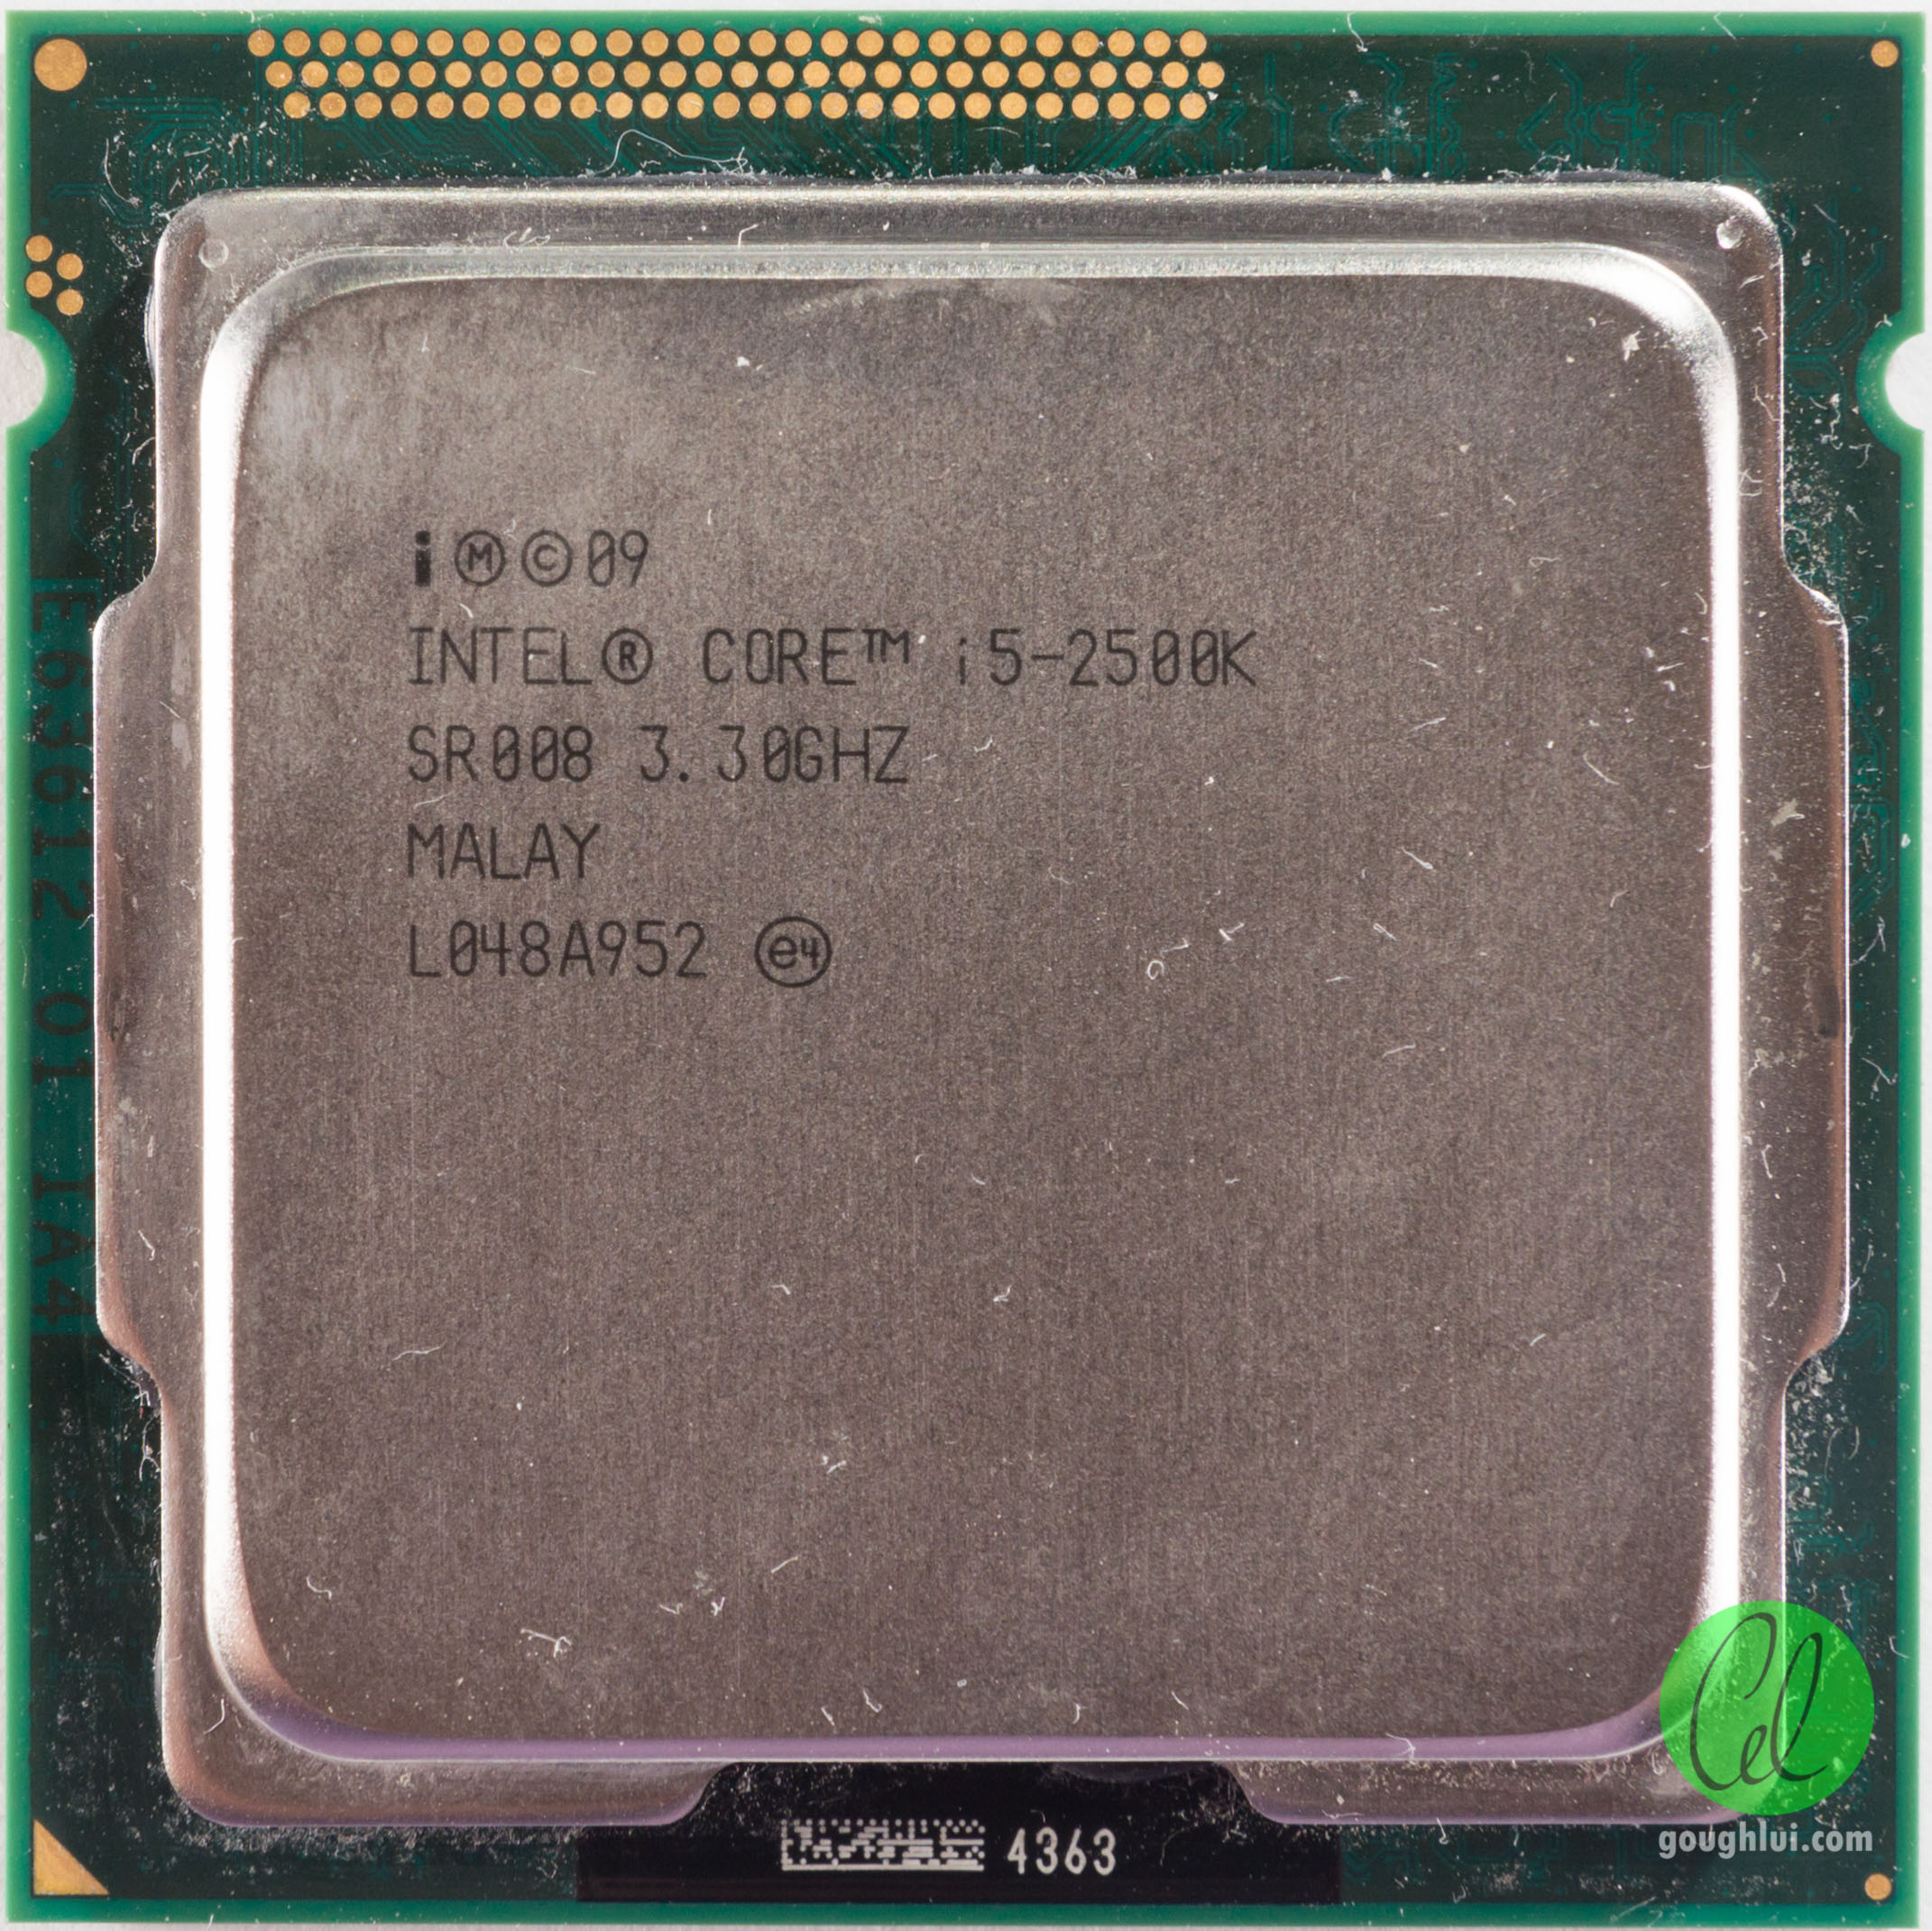 Процессоры на lga 1155. I7 2600s сокет. Интел сокет 1155. Intel Pentium g840 lga1155, 2 x 2800 МГЦ. Чипсет 1155.